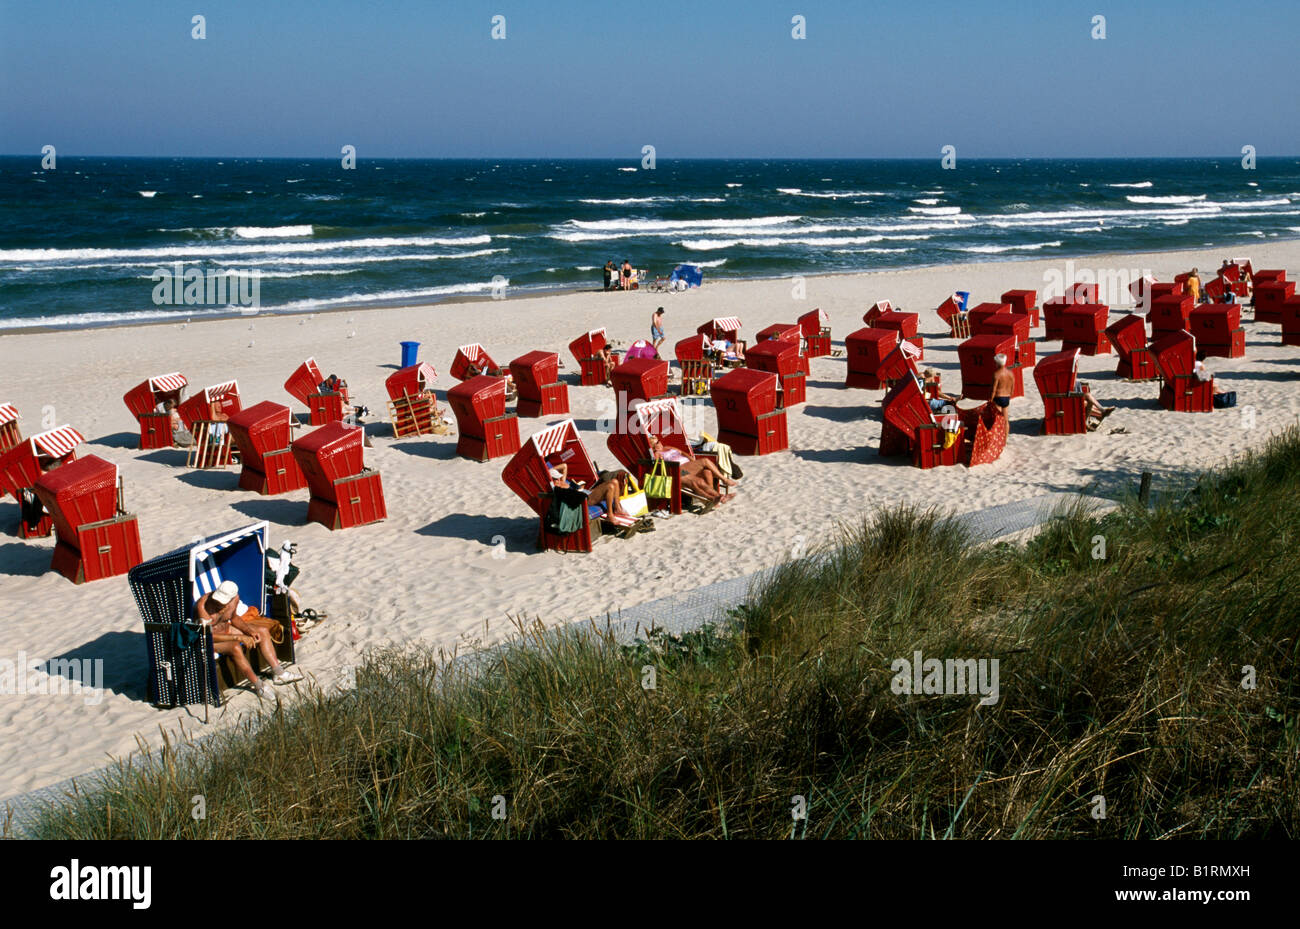 Sedie a sdraio, Zinnowitz, Usedom, costa baltica, Meclemburgo-Pomerania, Germania Foto Stock